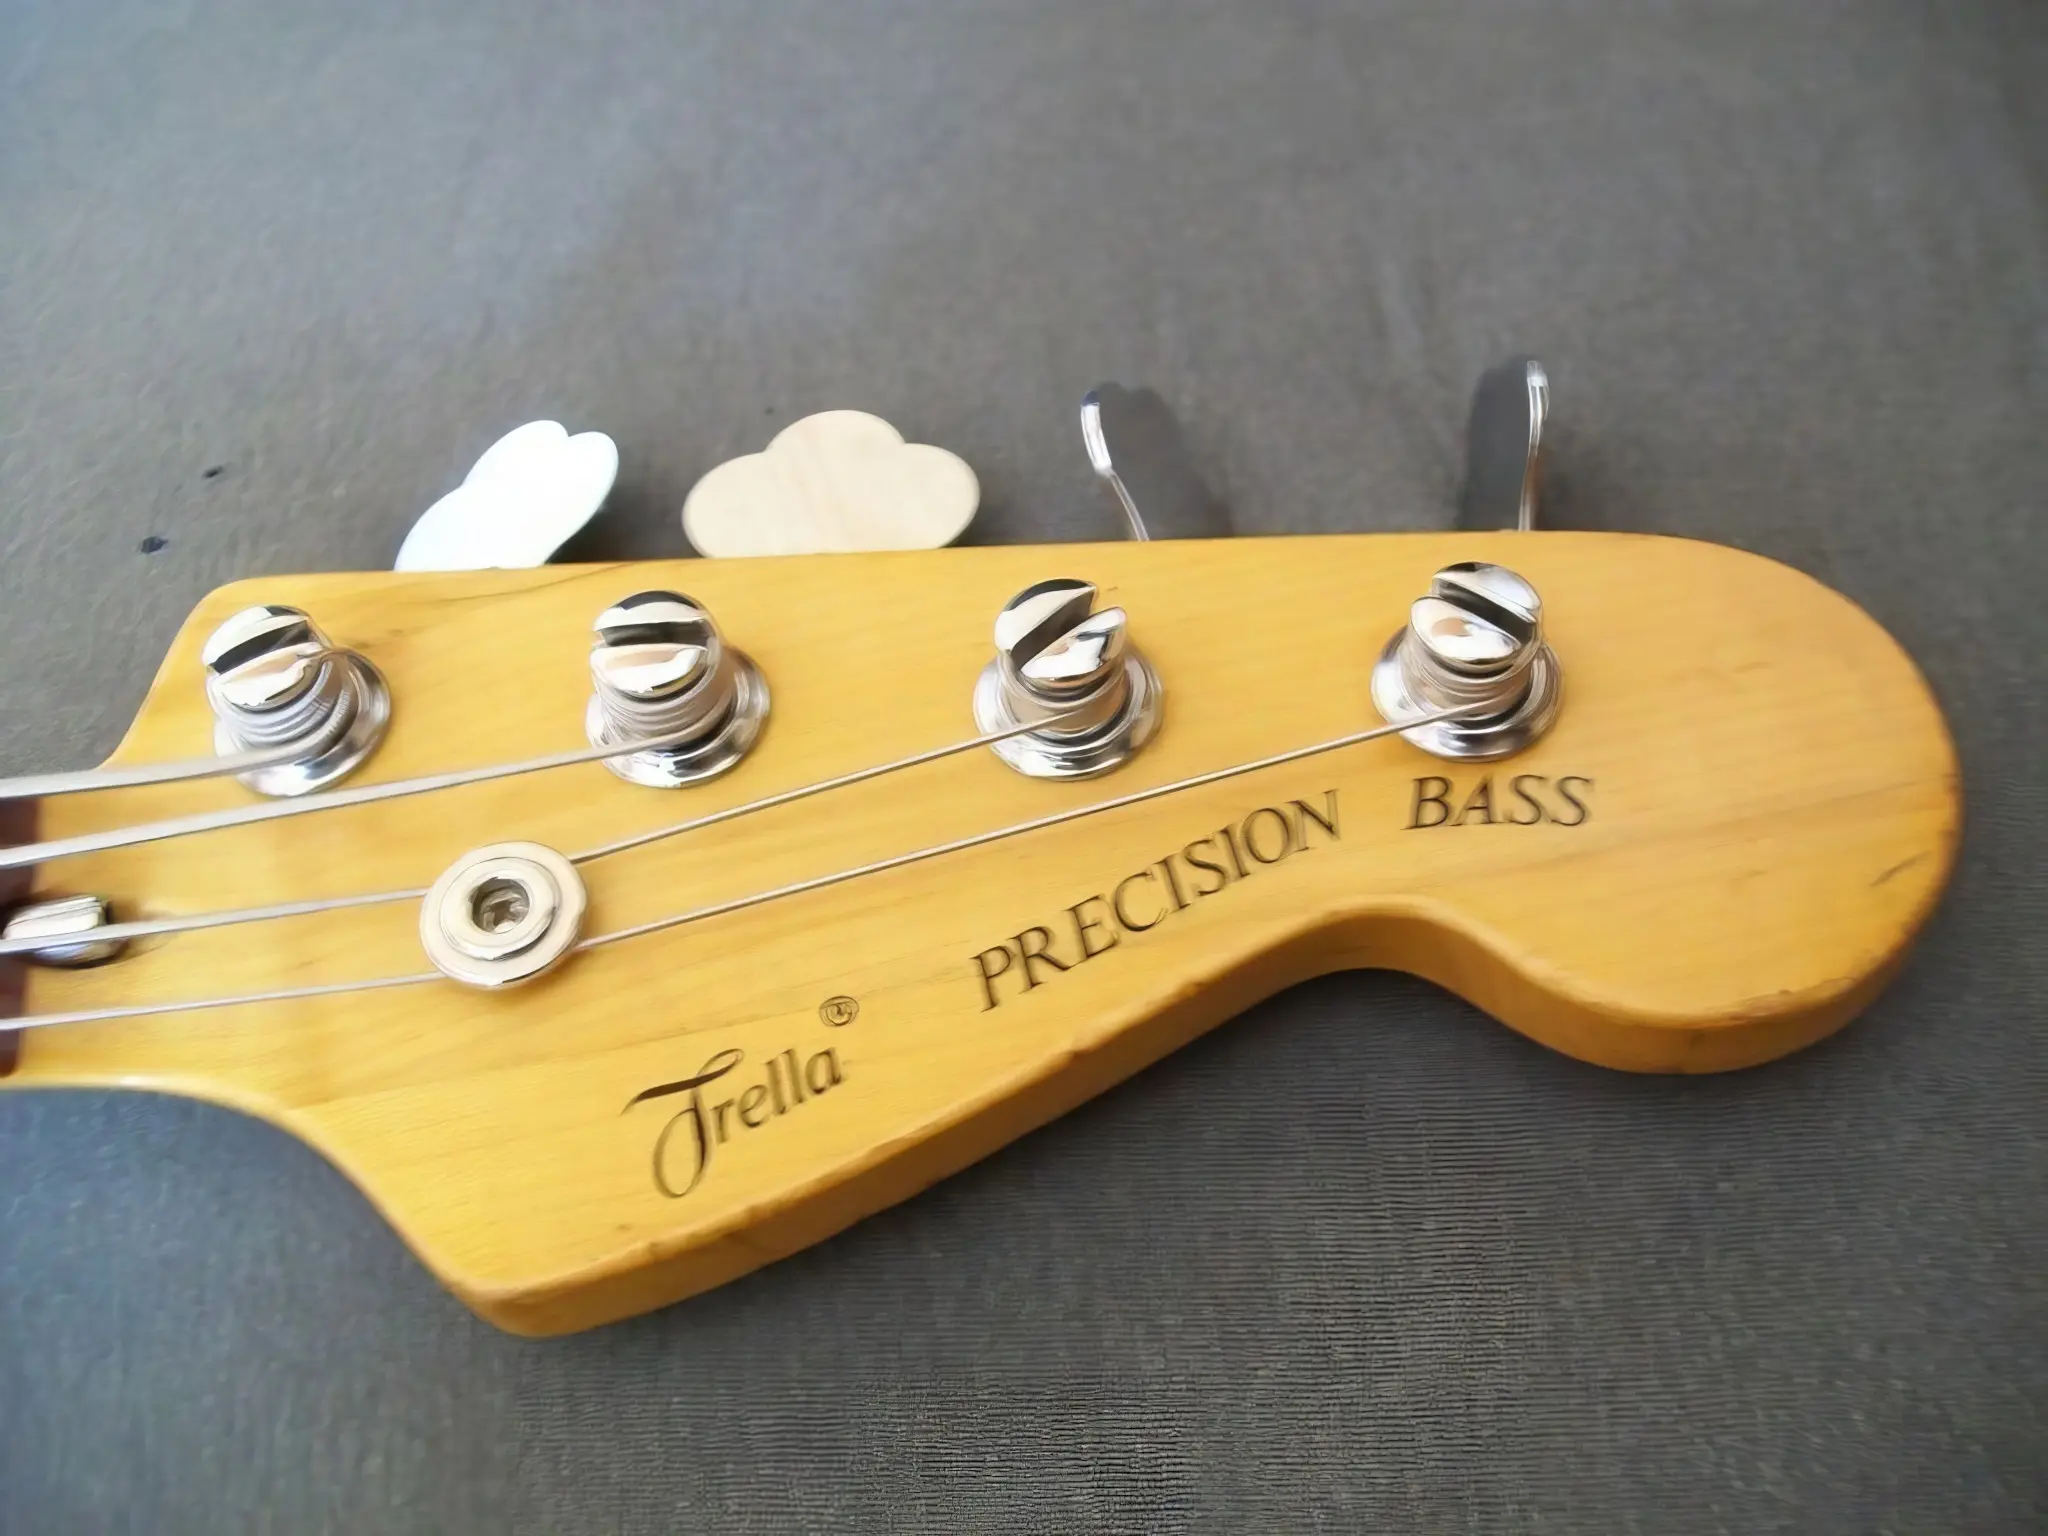 gitara trella precision bas